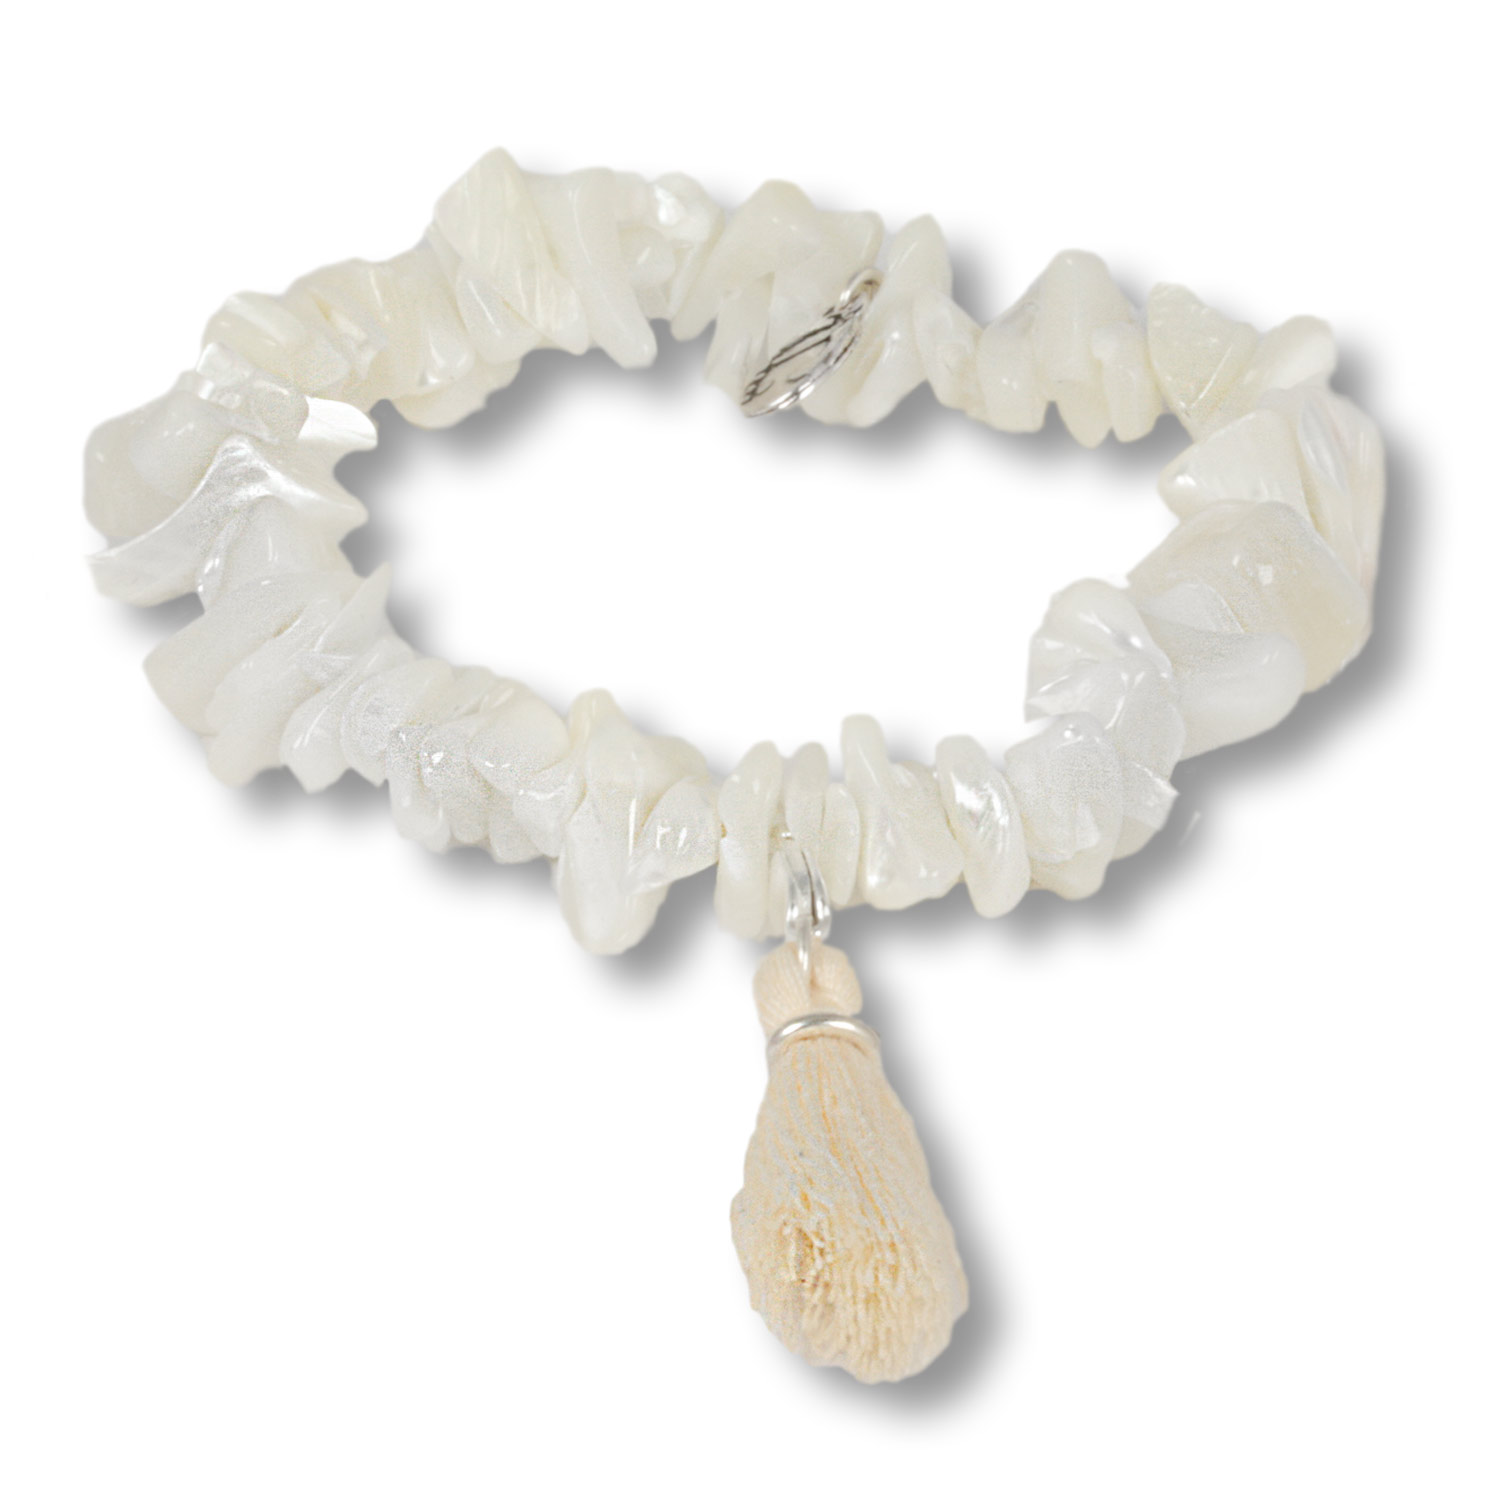 Sea Bay - Ocean Daughters mother-of-pearl gemstone bracelet